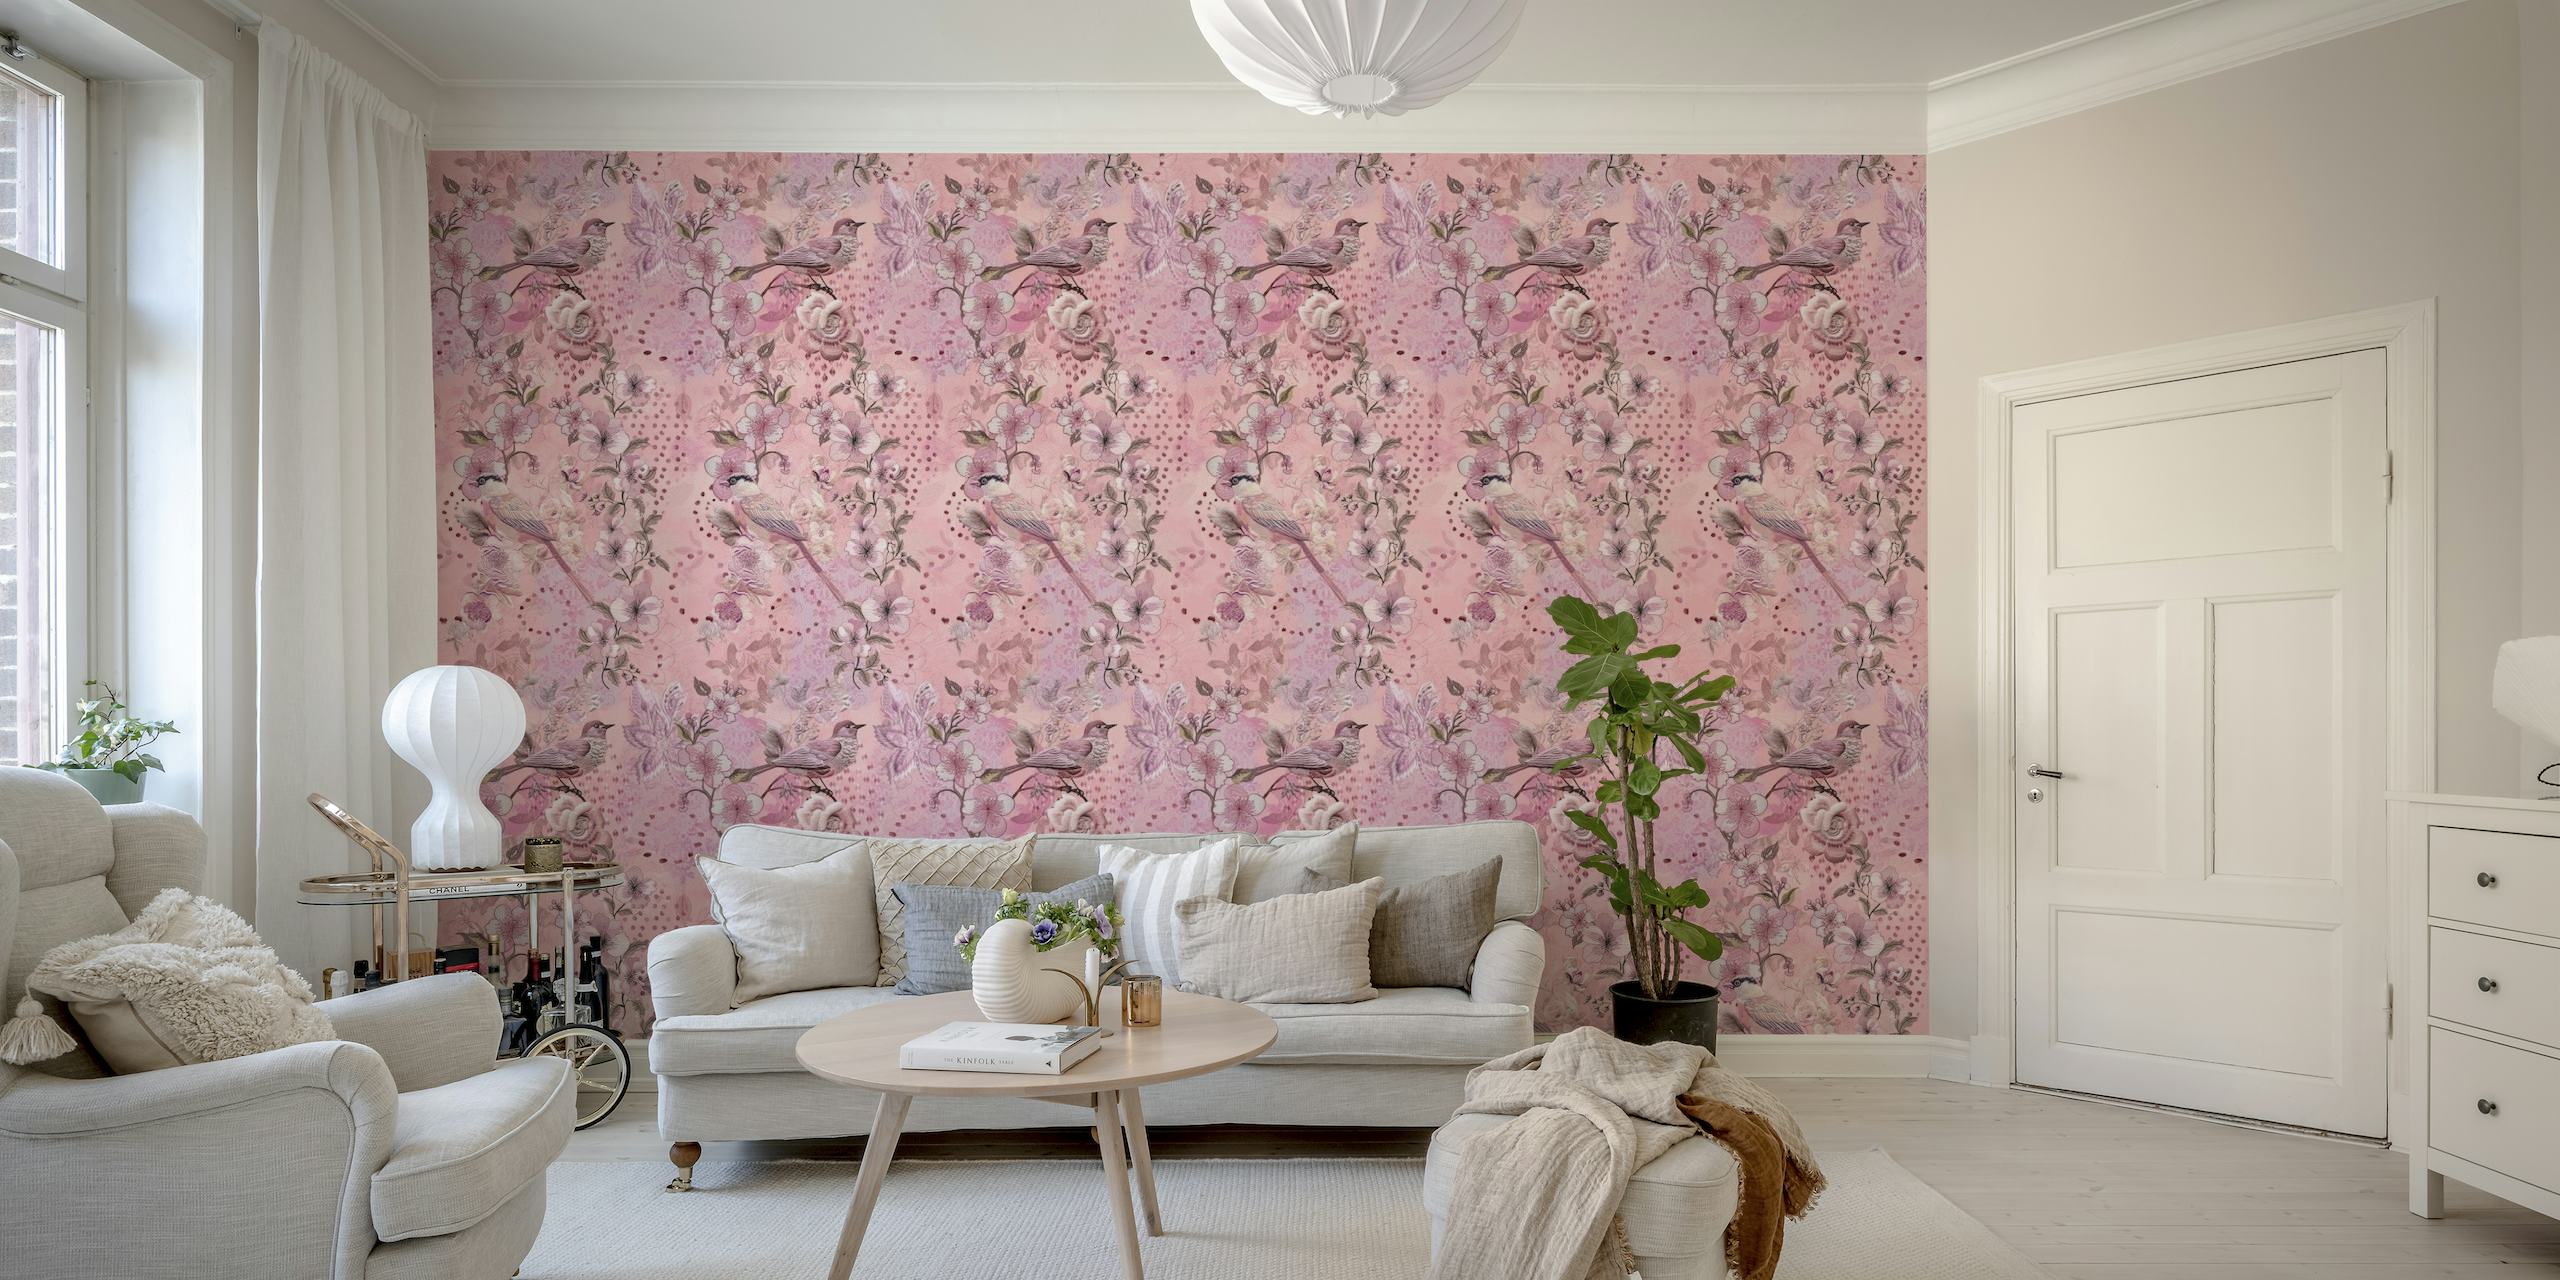 Fotomural vinílico de parede de pássaros e flores estilo bordado em tons rosa